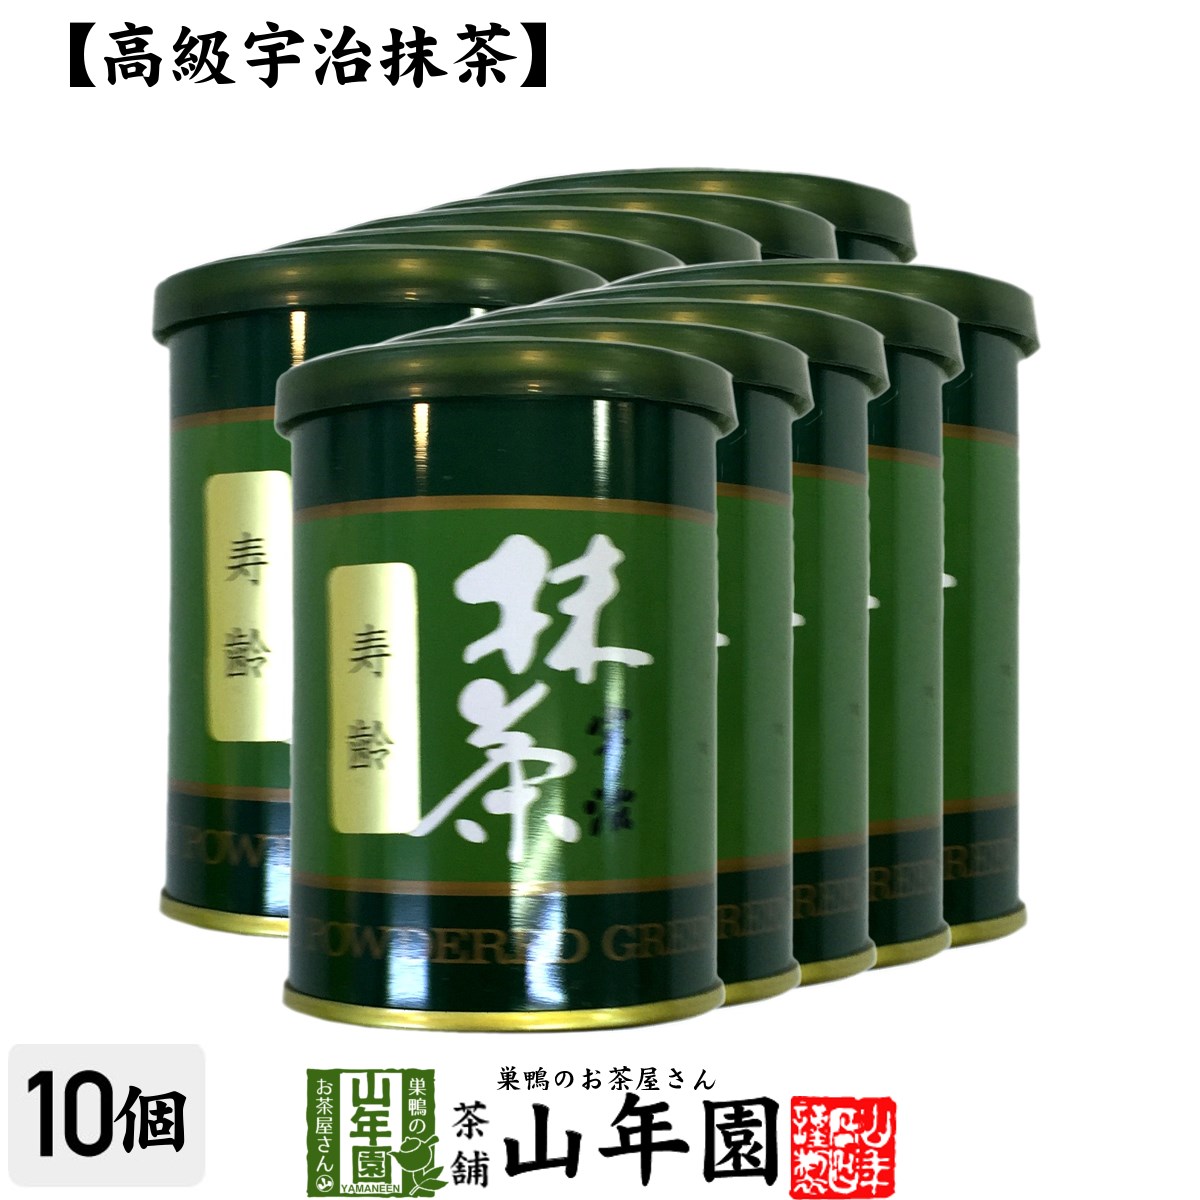 【高級宇治抹茶】抹茶 粉末 寿齢 40g×10缶セット 送料